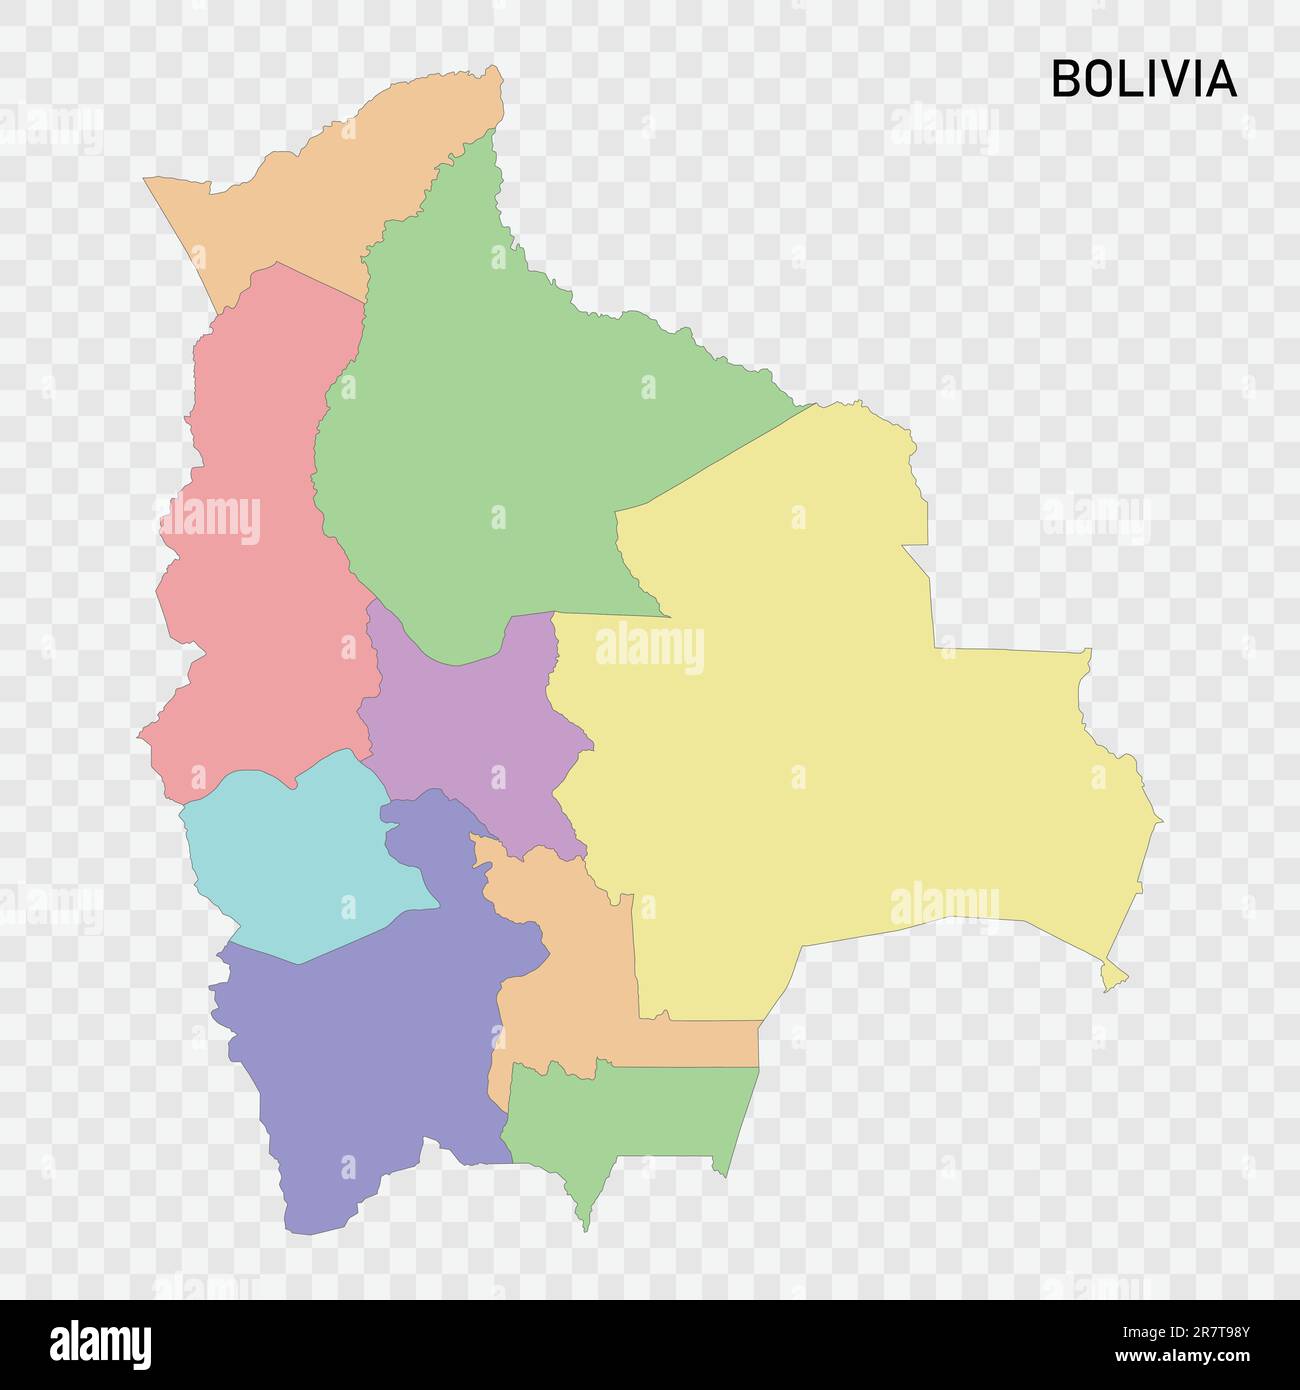 Carte couleur isolée de la Bolivie avec frontières des régions Illustration de Vecteur